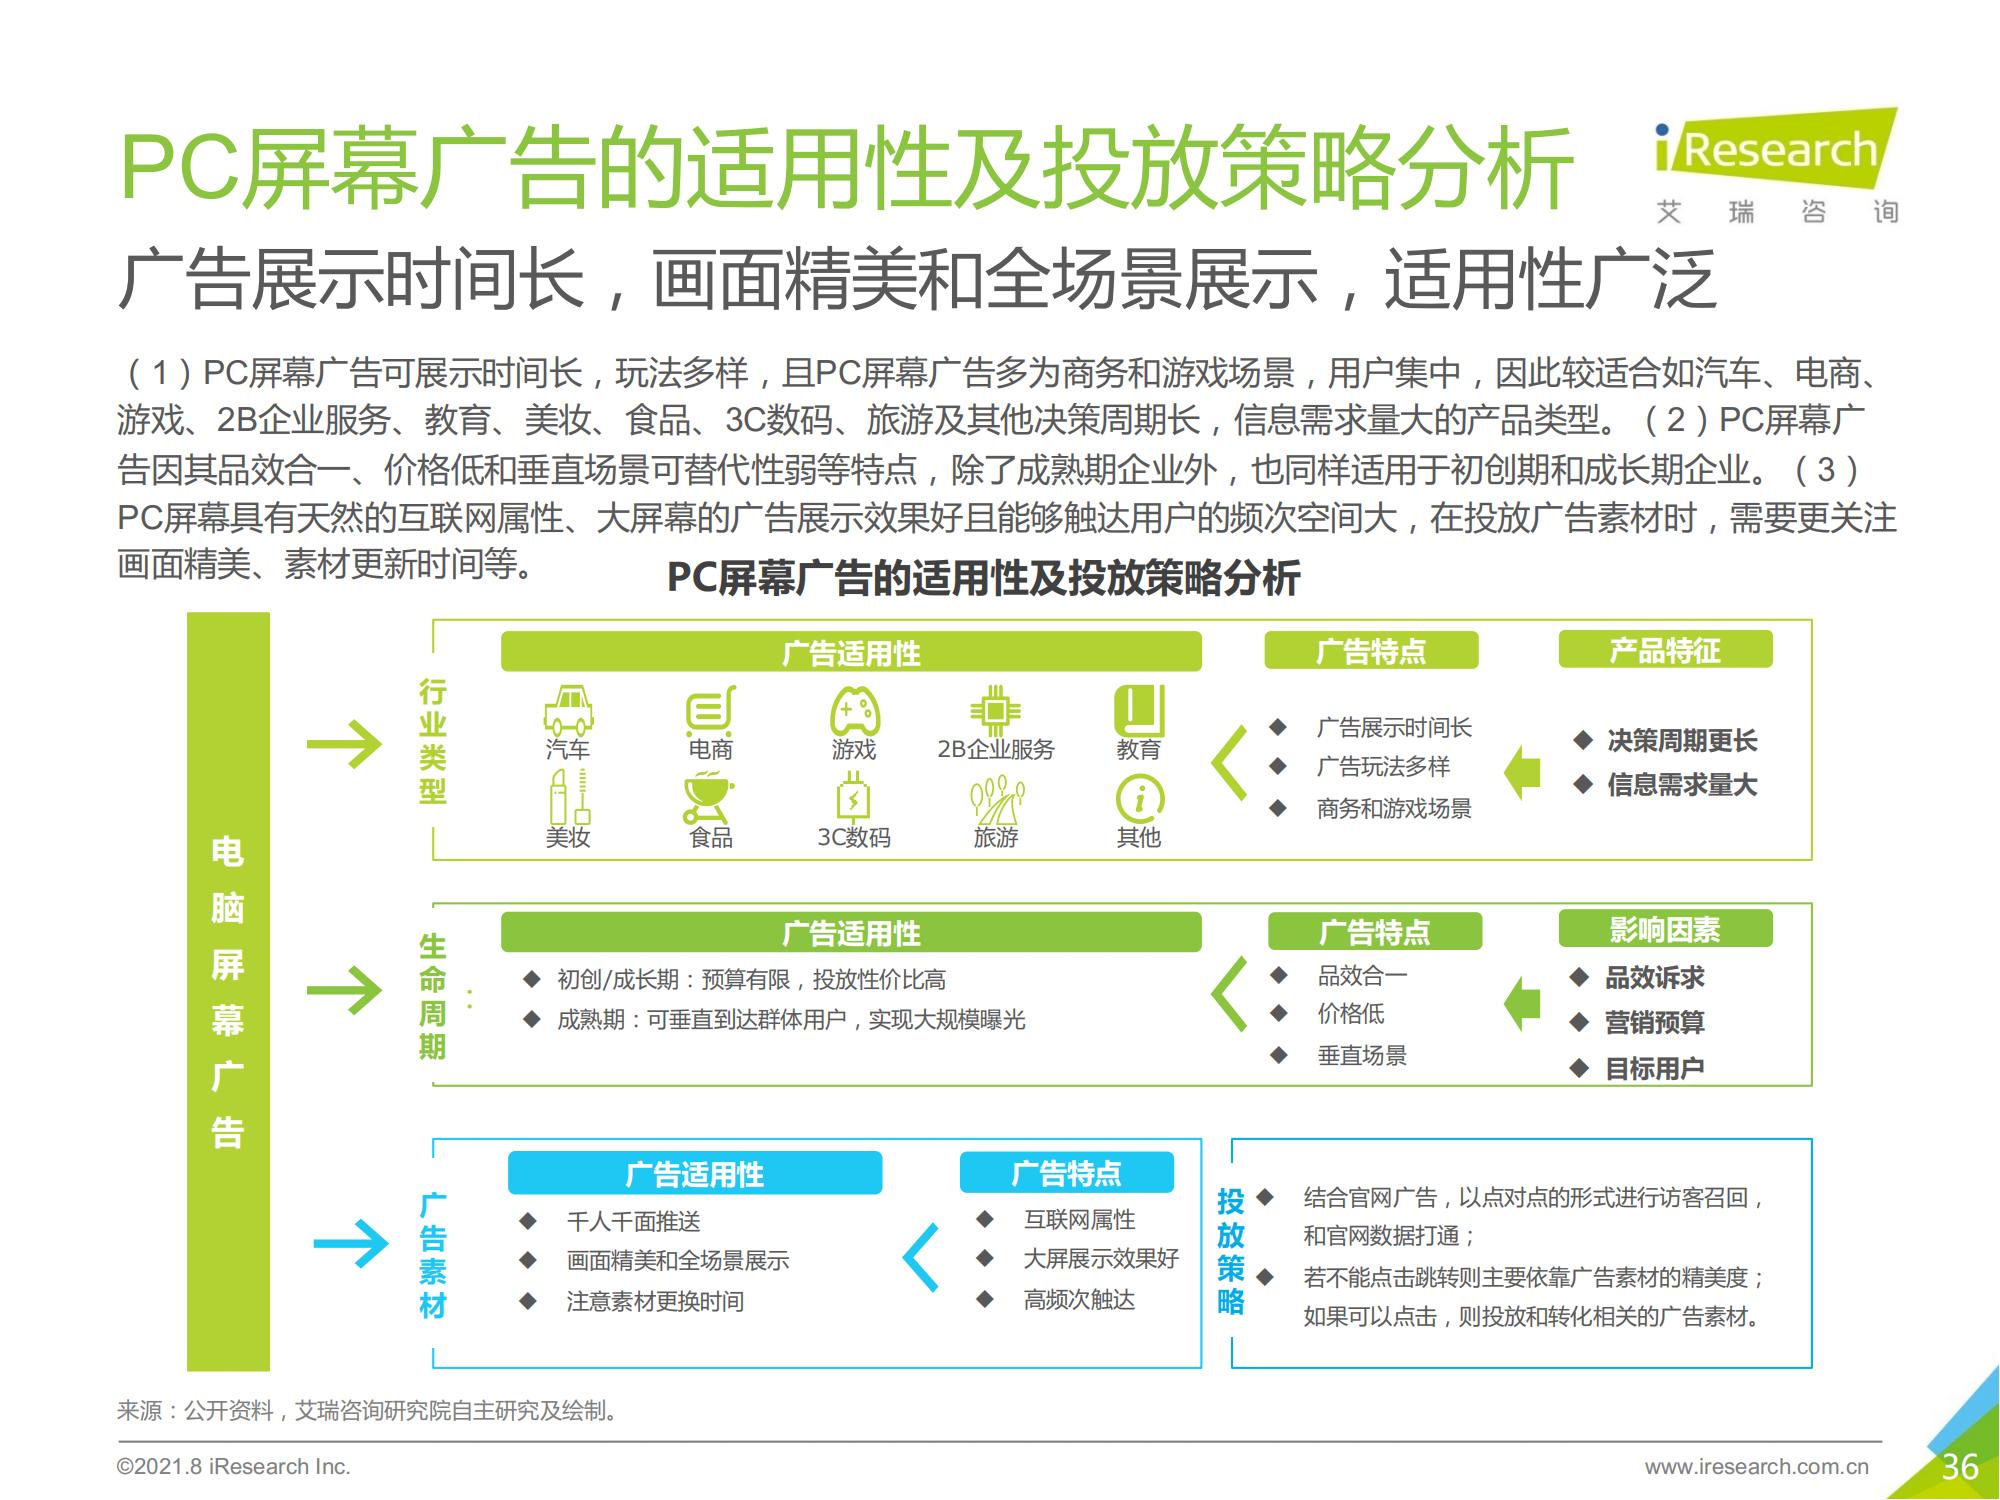 【艾瑞咨询】2021年中国硬件场景创新广告白皮书—数字屏幕广告篇_35.jpg